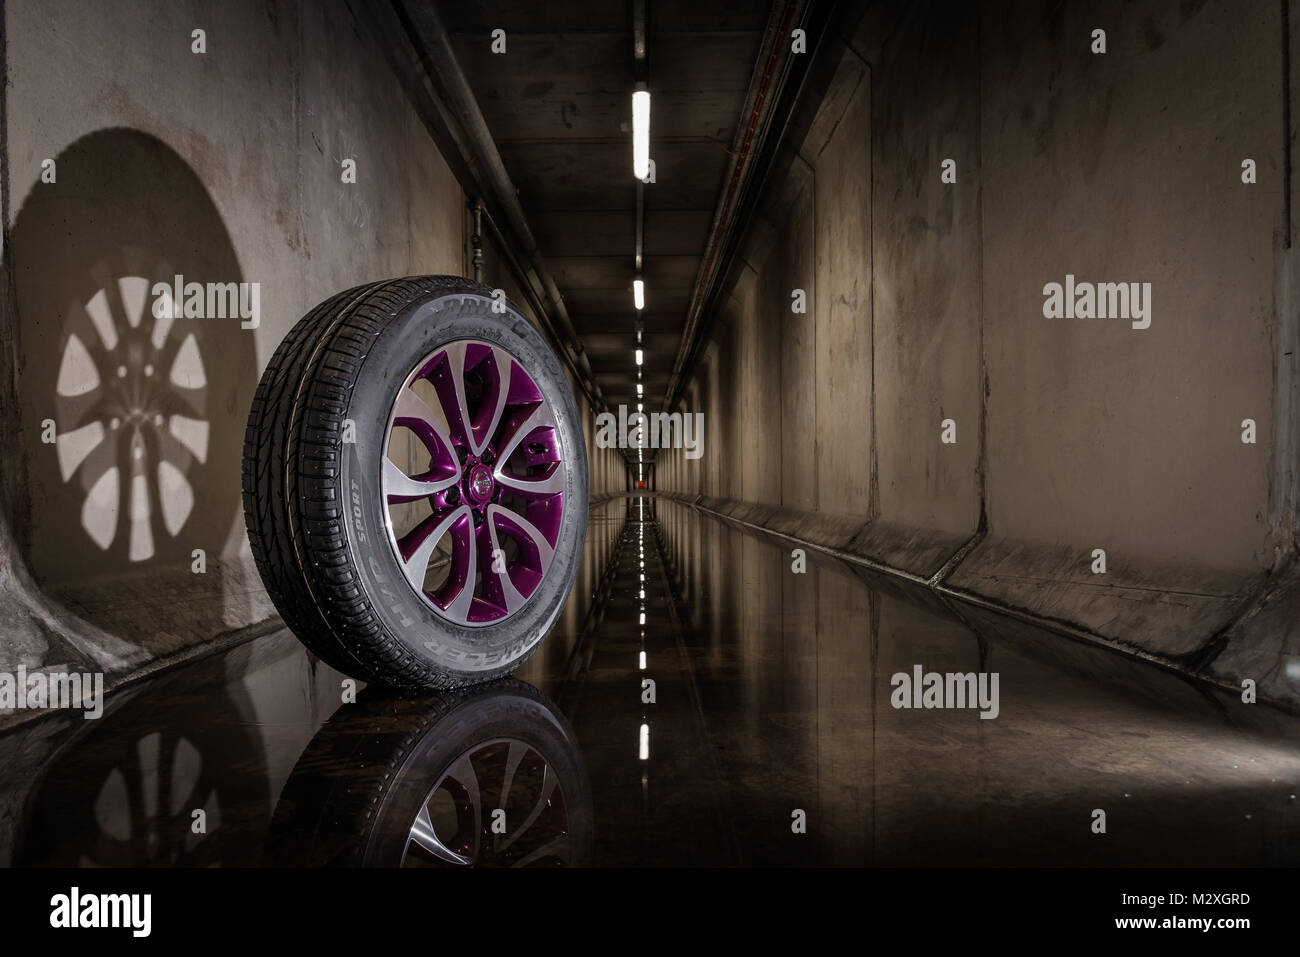 Nissan Juke purple roue avec pneu Bridgestone dans un tunnel faiblement éclairé Banque D'Images